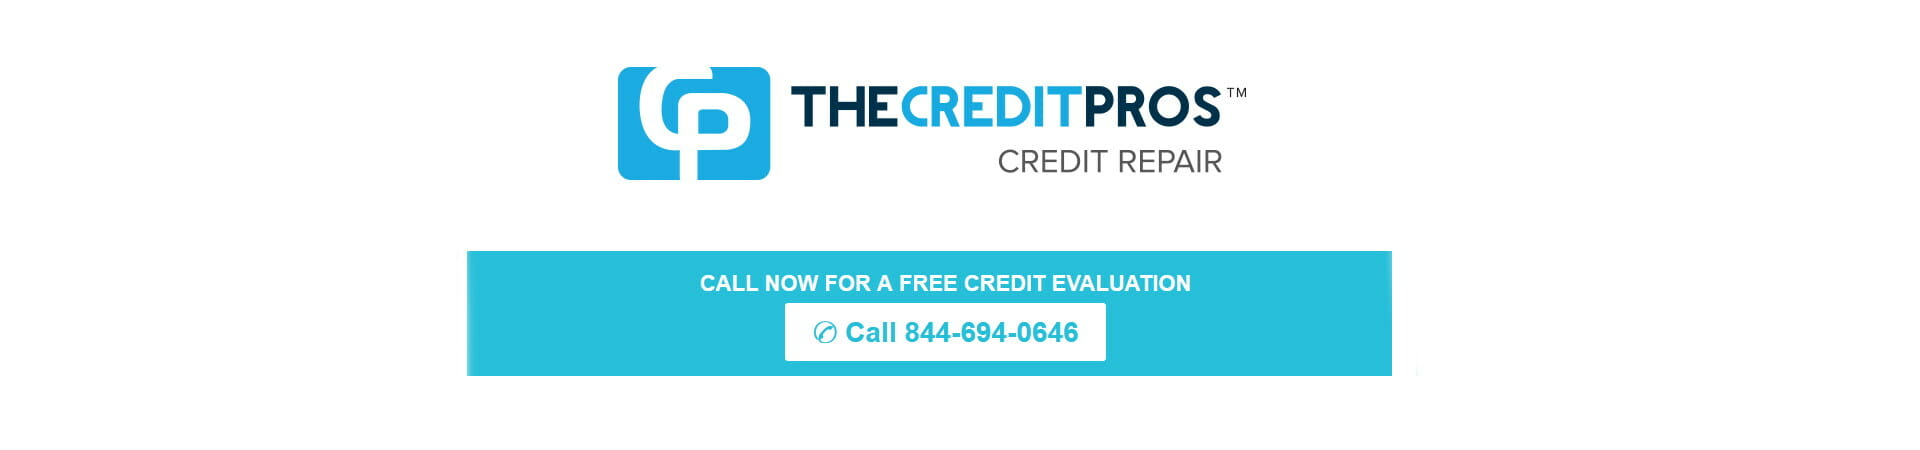 The Credit Pros credit repair reviews